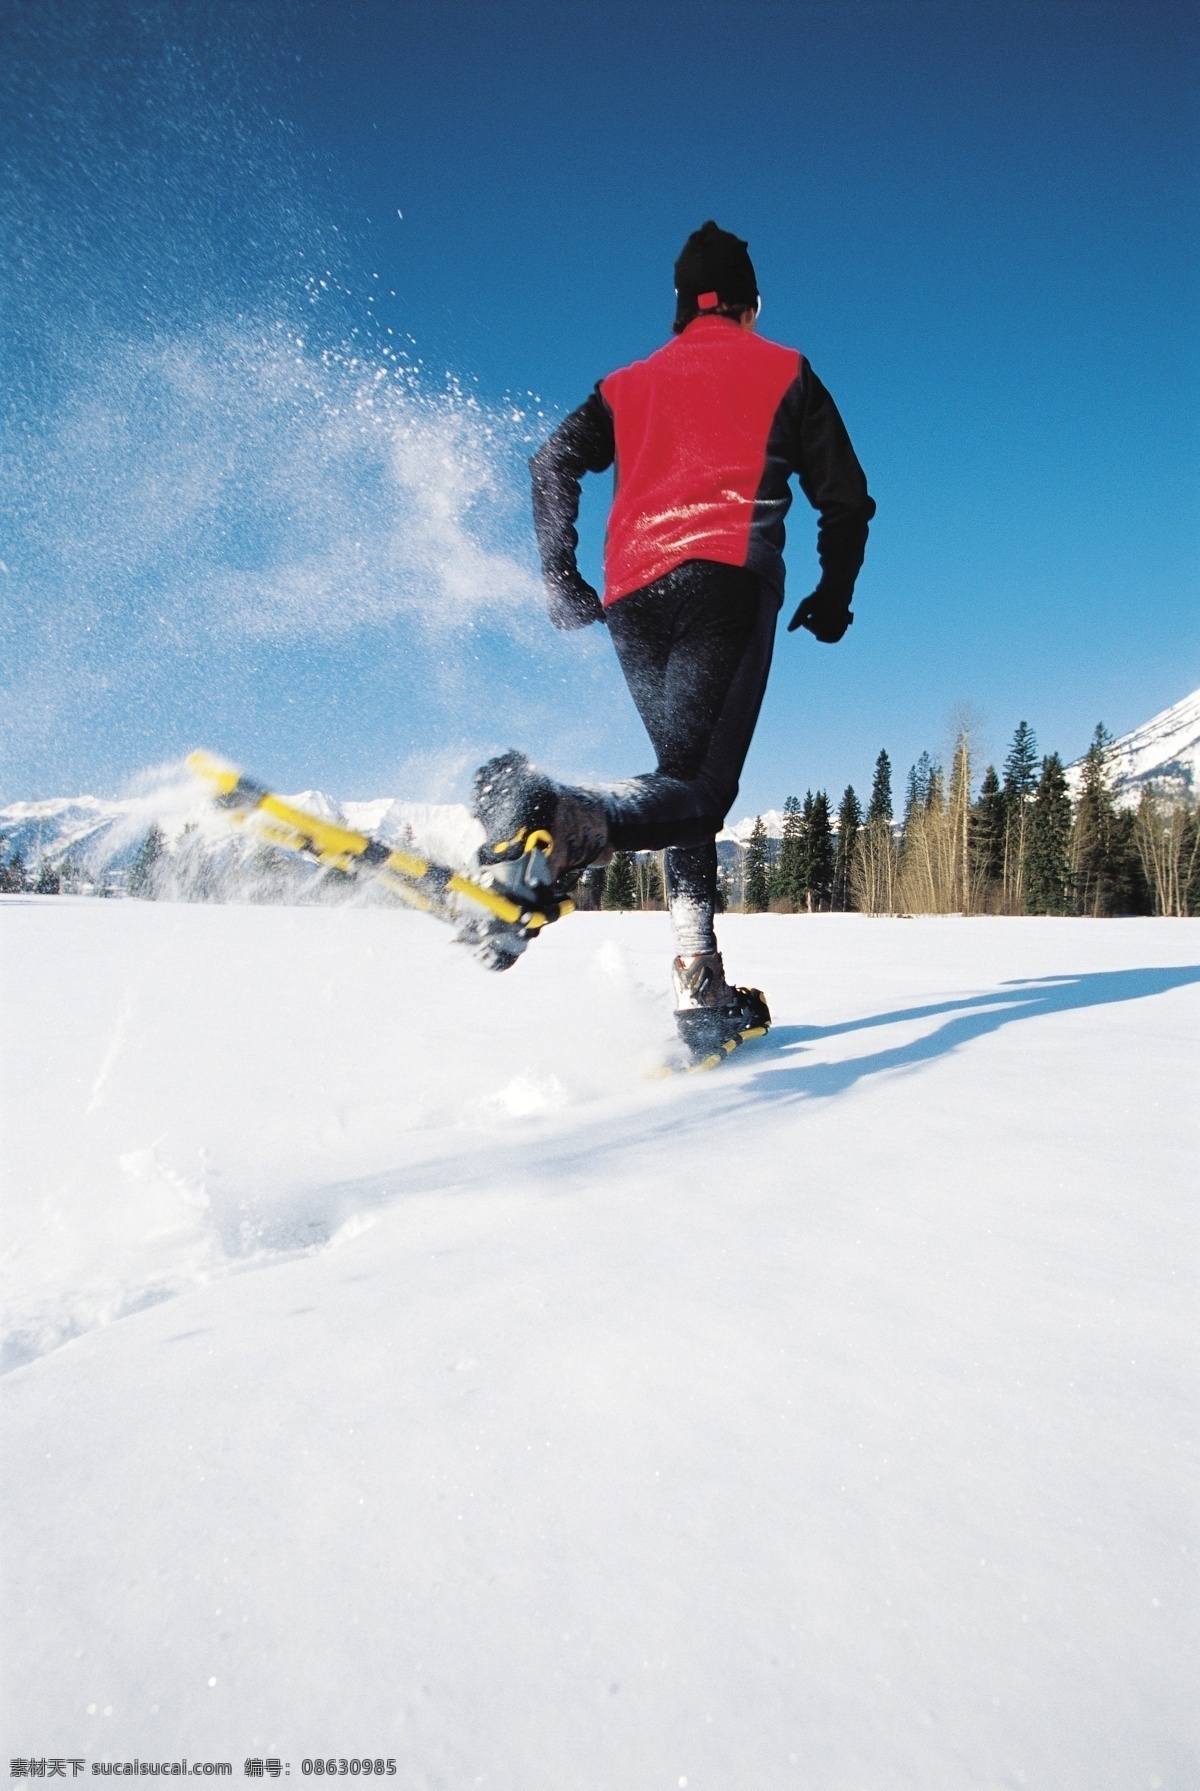 雪地 上 滑雪 运动员 高清 冬天 雪地运动 划雪运动 极限运动 体育项目 运动图片 生活百科 雪山 美丽 雪景 风景 摄影图片 高清图片 体育运动 白色